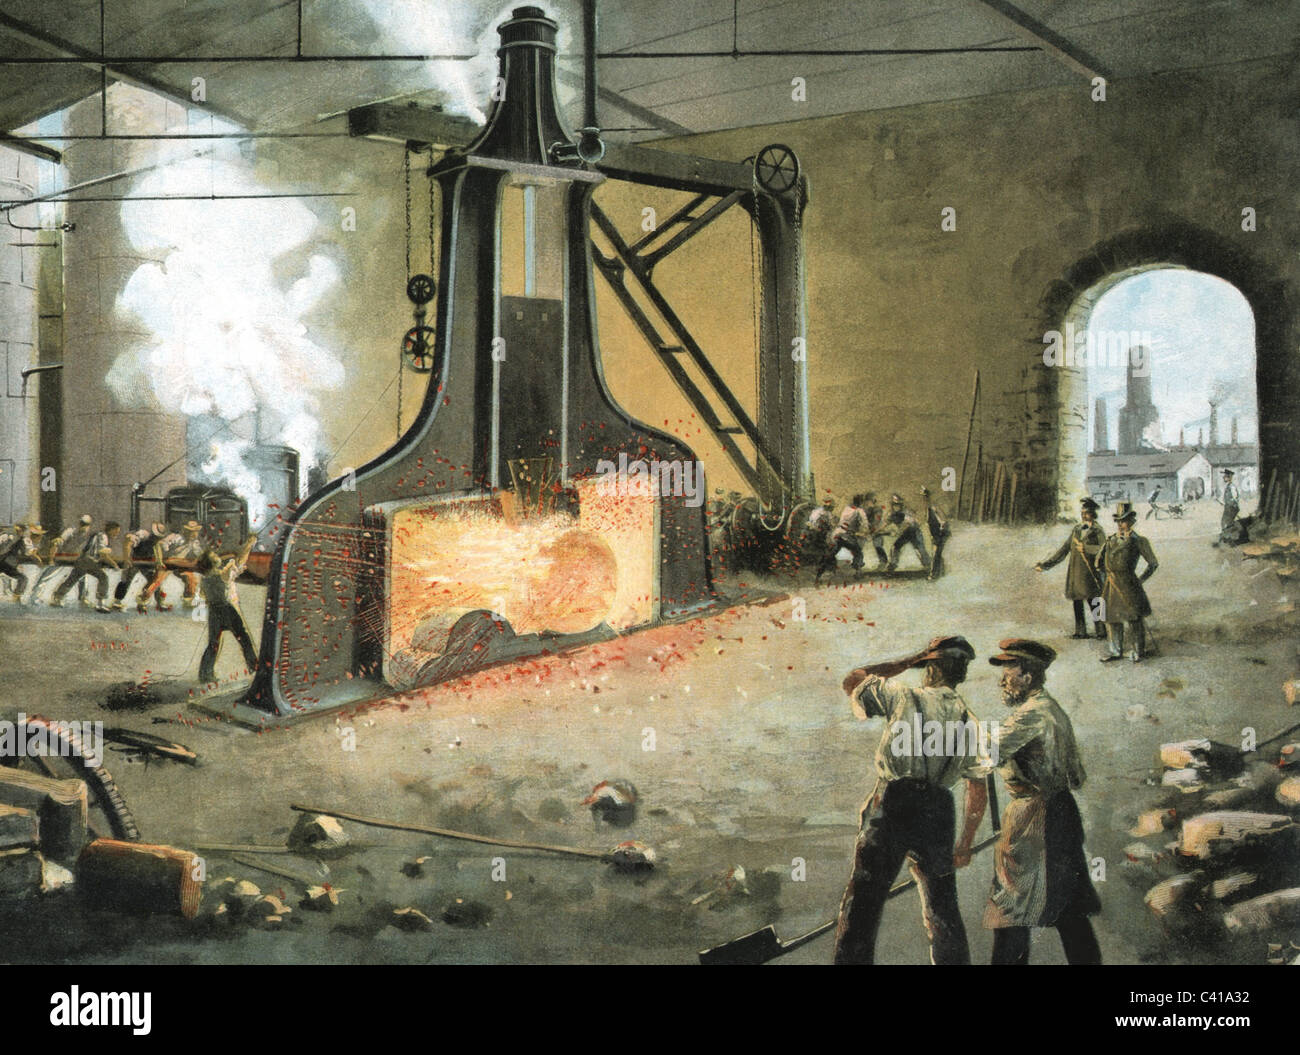 Industrie, métal, traitement du métal avec marteau à vapeur par James Nasmyth, gravure de bois, coloré, 1842, droits additionnels-Clearences-non disponible Banque D'Images